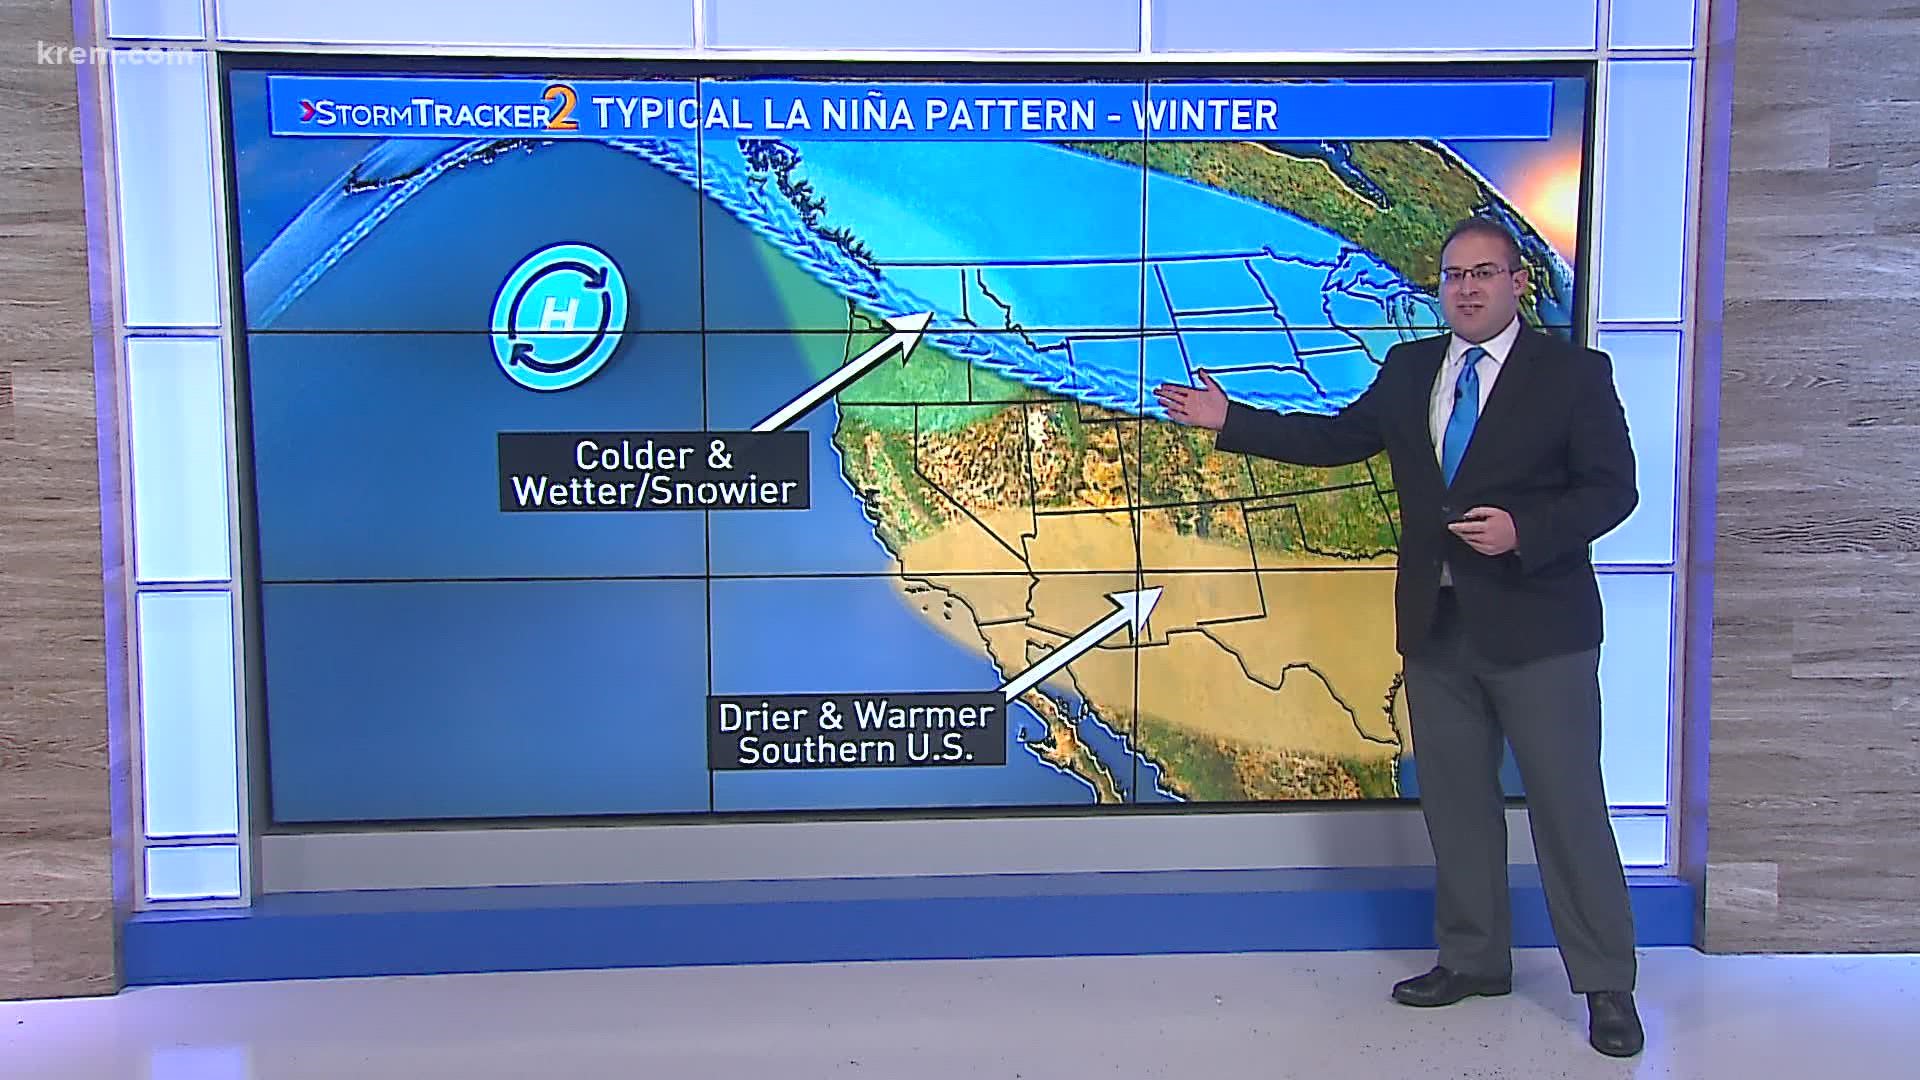 Spokane winter forecast La Niña likely